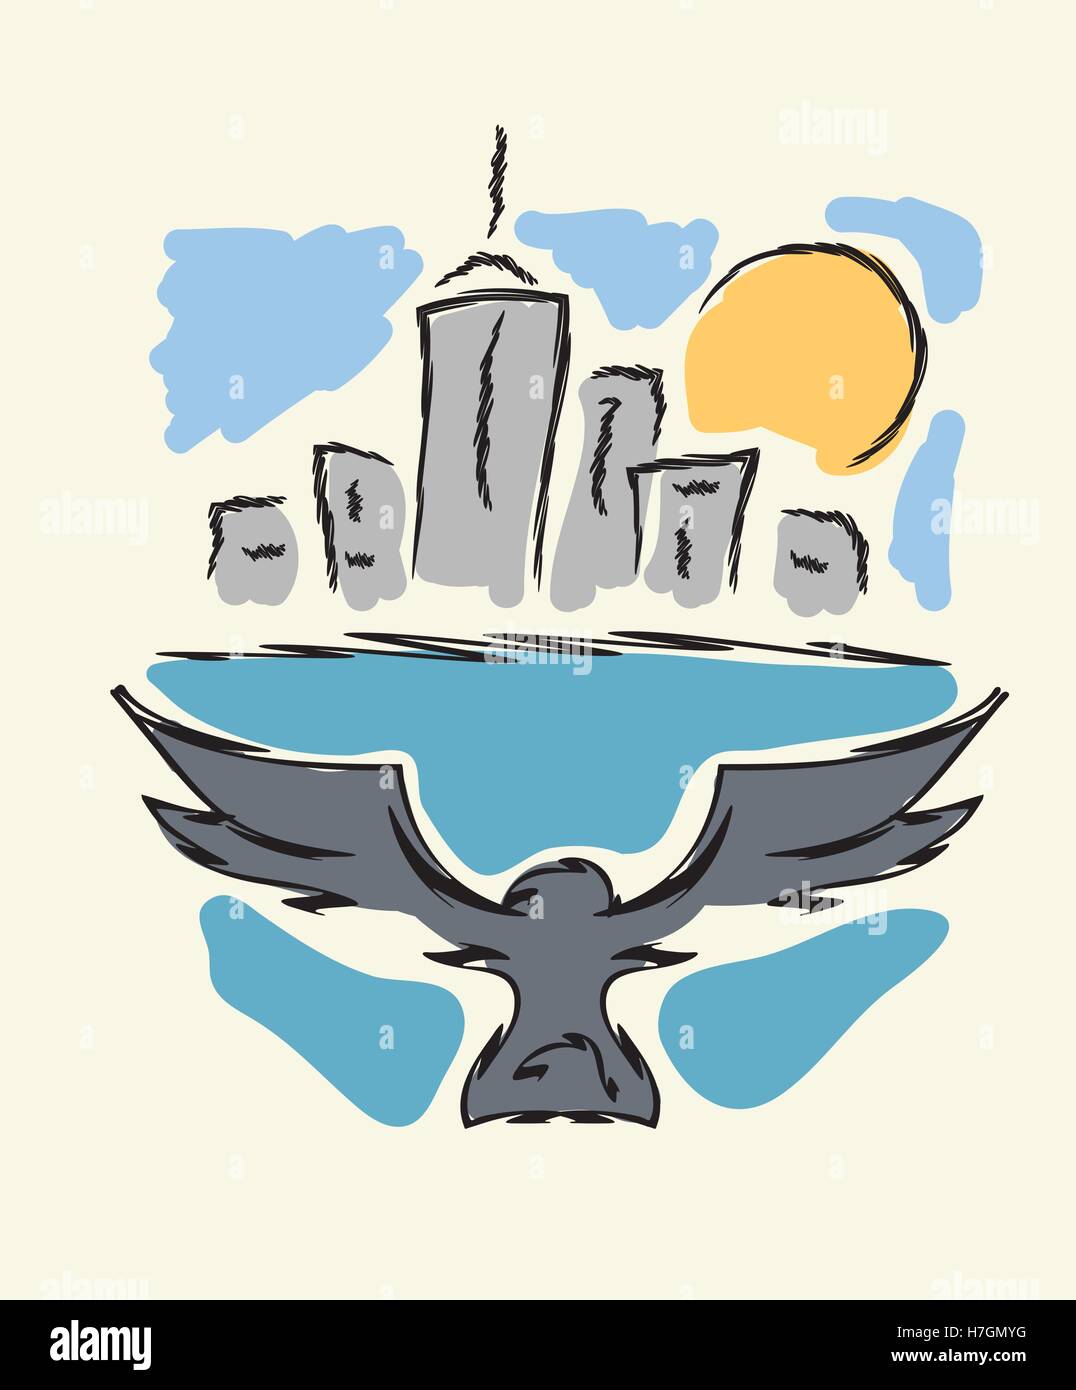 Vol d'oiseau de la ville moderne d'illustration vectorielle, dessin à la main Illustration de Vecteur